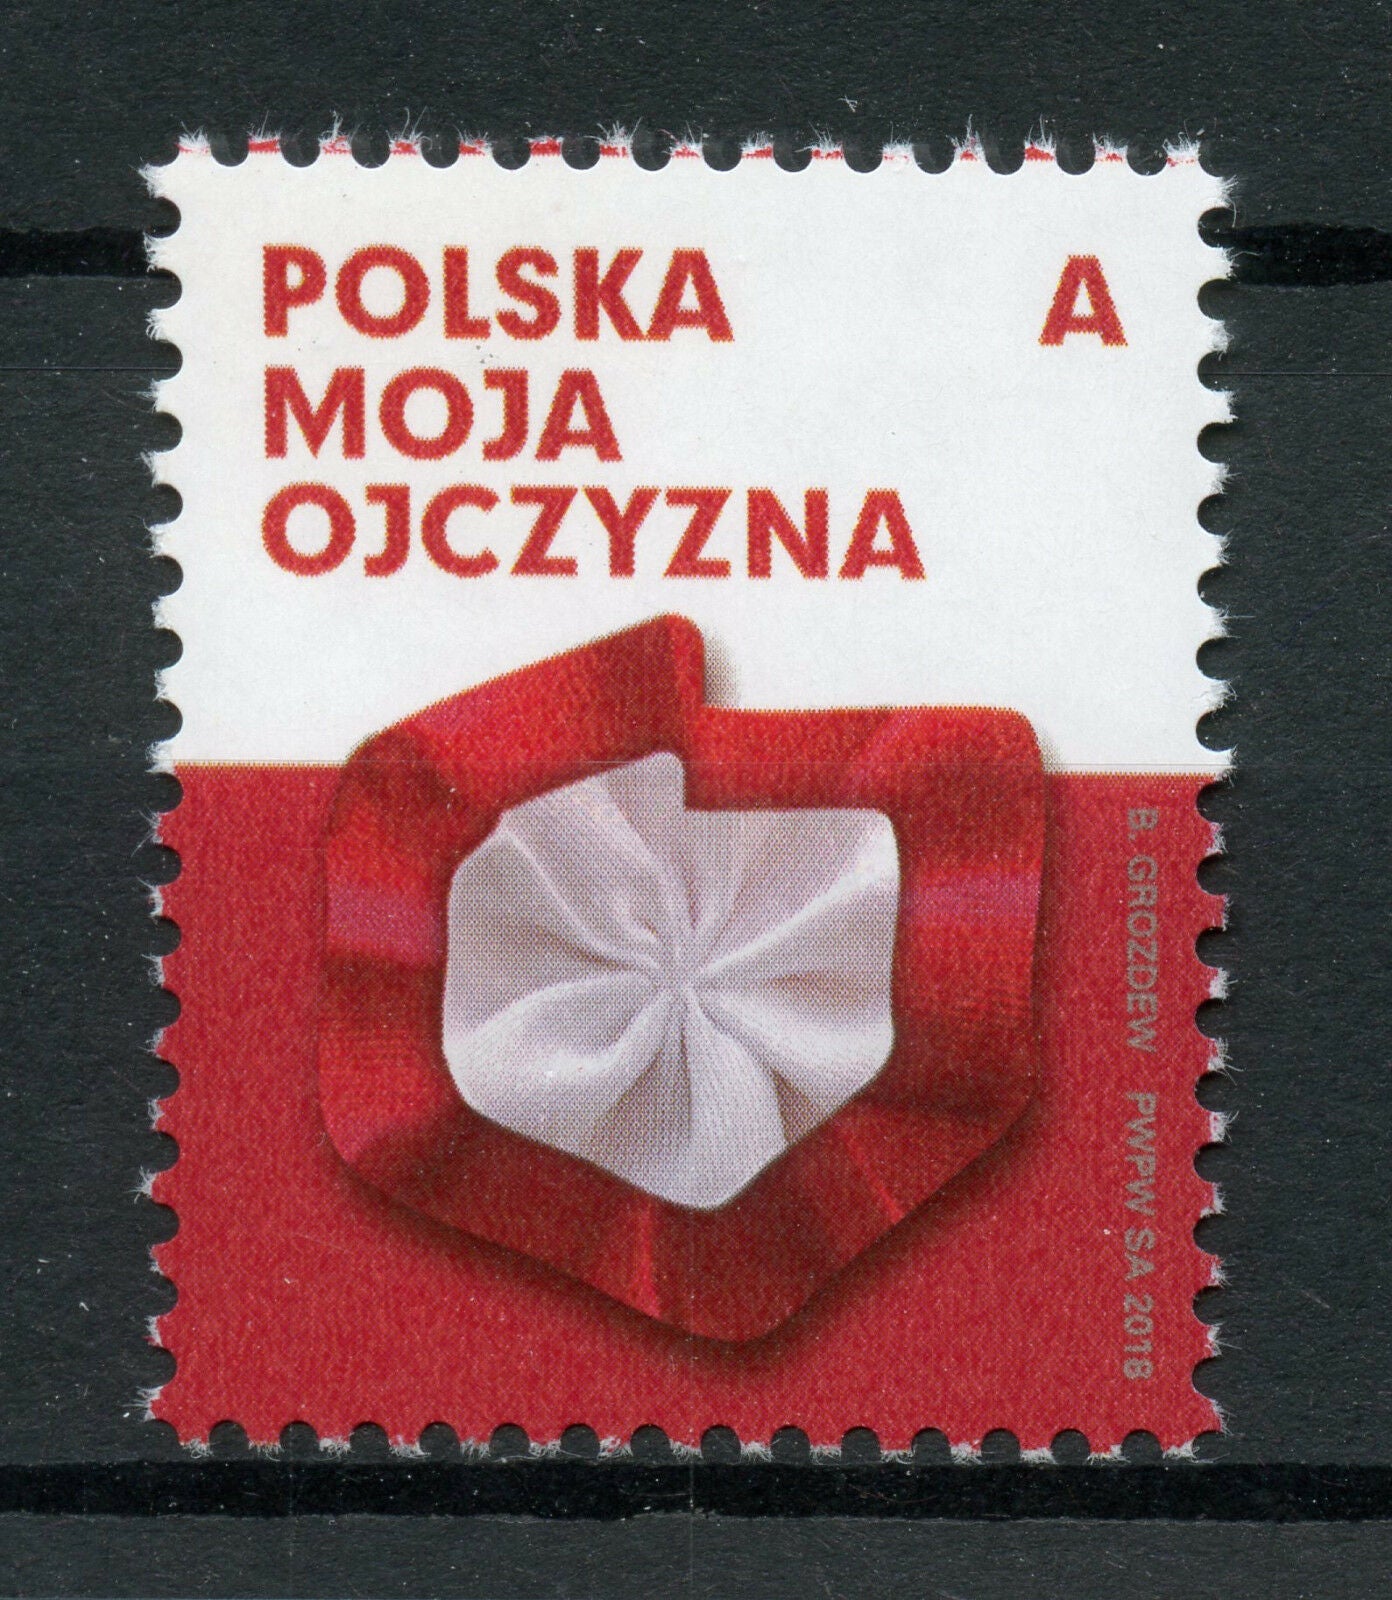 Poland 2018 MNH Poland My Homeland 1v Set Cultures Stamps